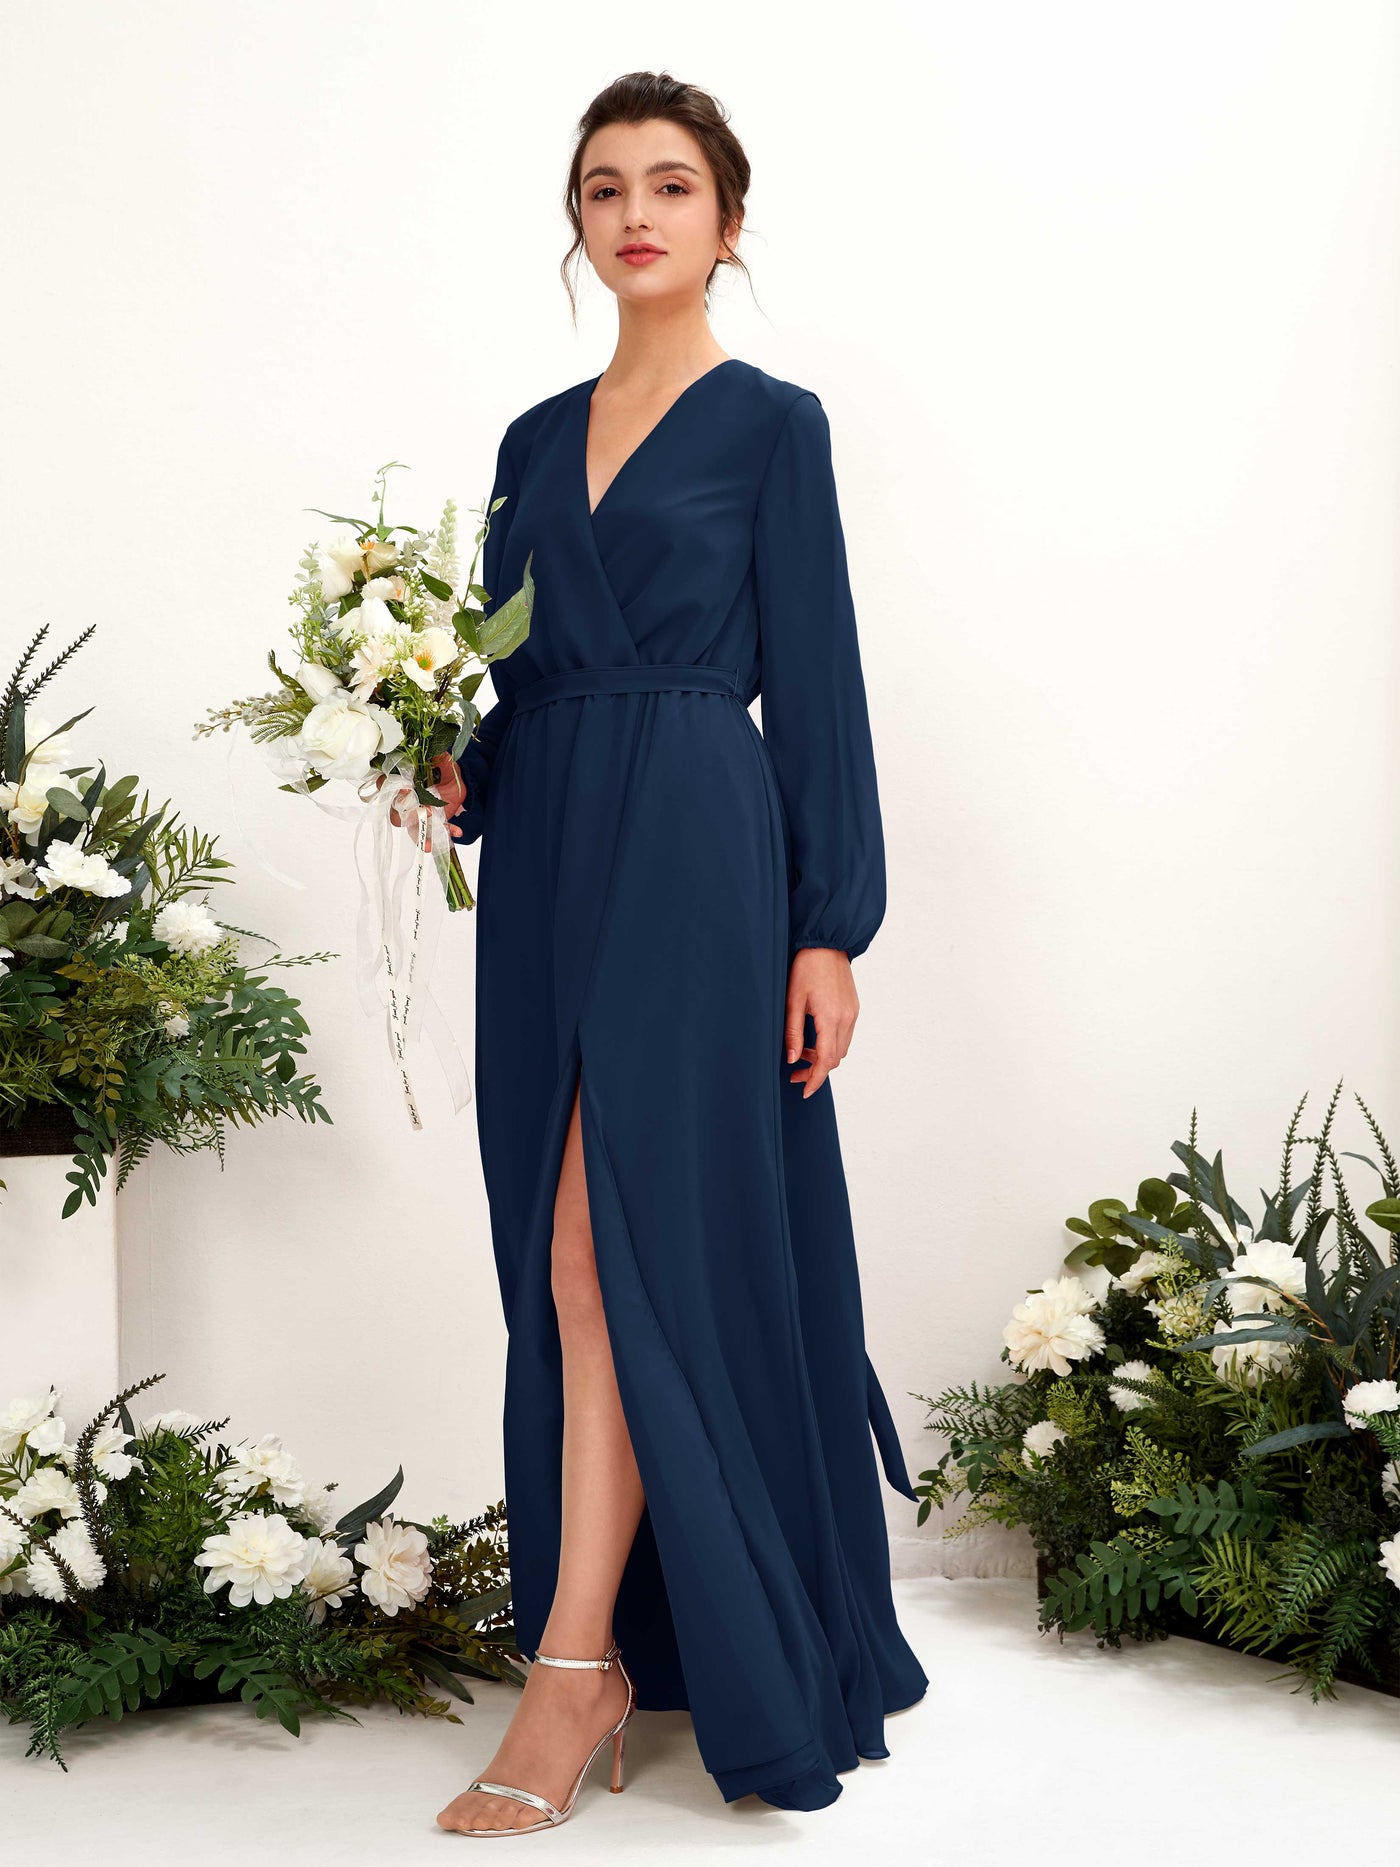 V-neck Long Sleeves Chiffon Bridesmaid Dress (81223213)#color_navy